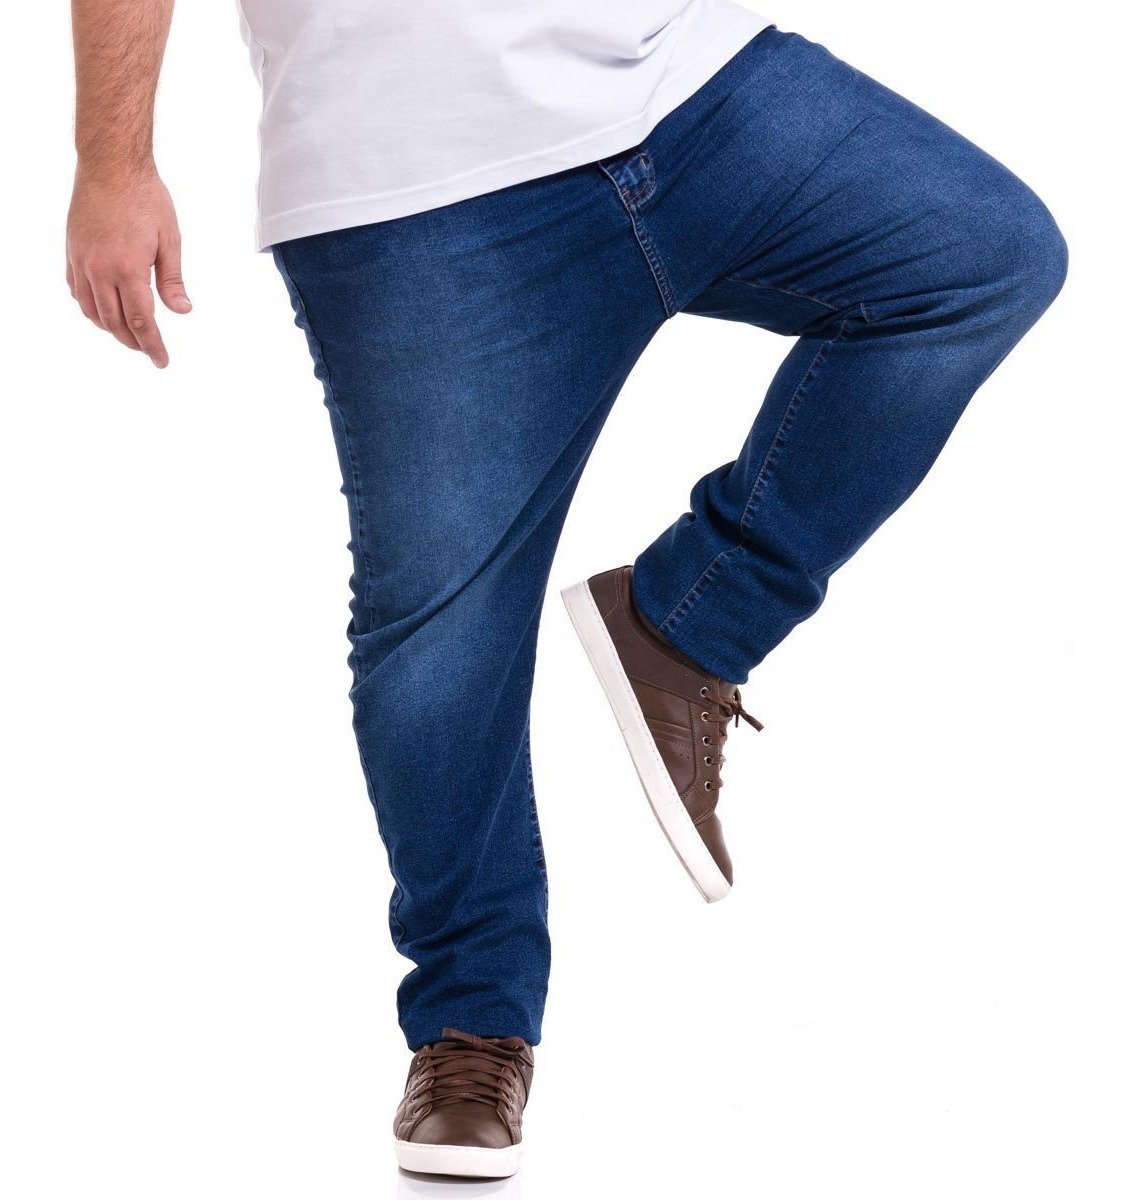 calça jeans masculina lycra stretch